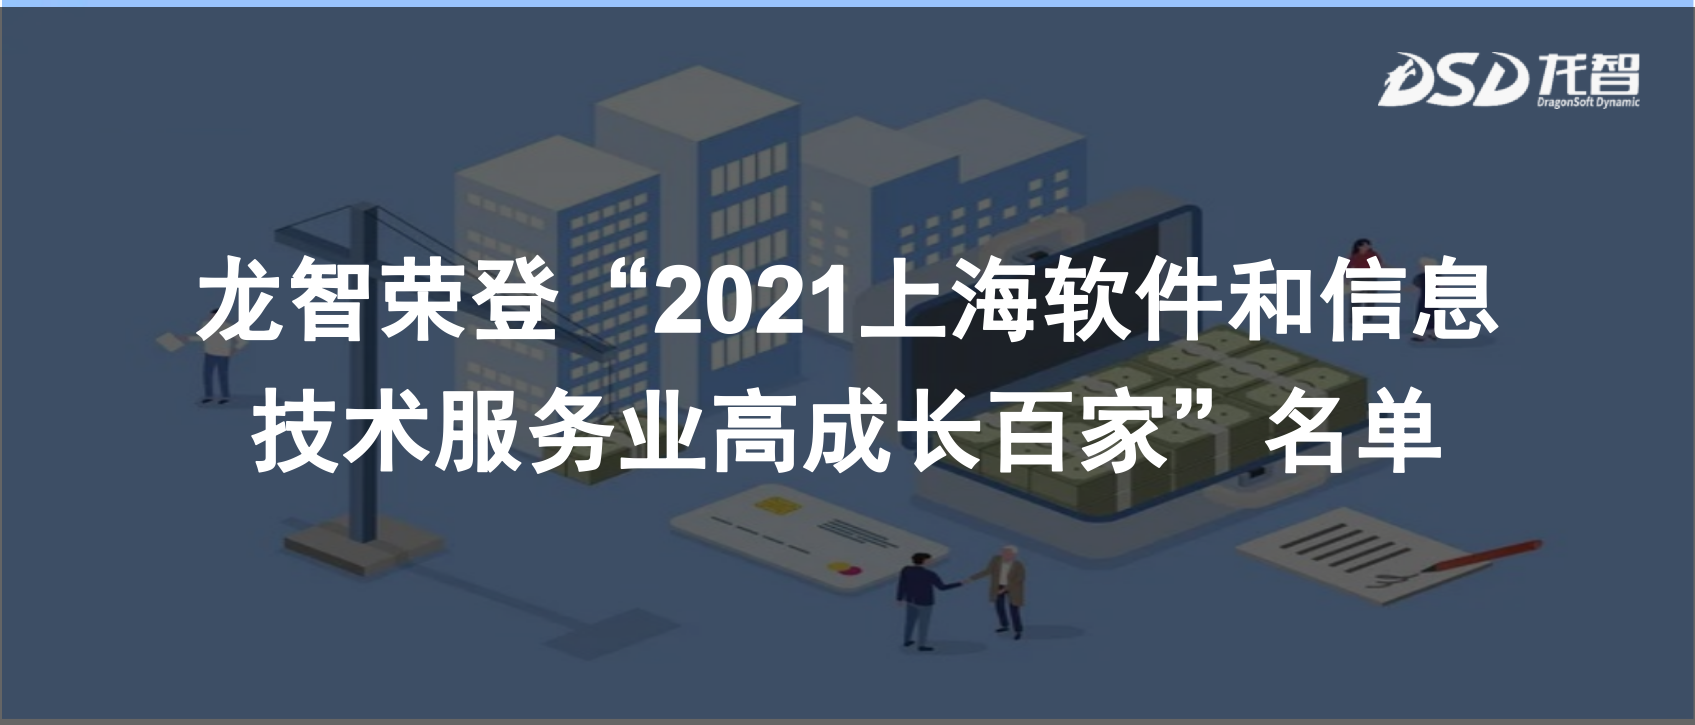 龙智第四次荣登“2021上海软件和信息技术服务业高成长百家”名单